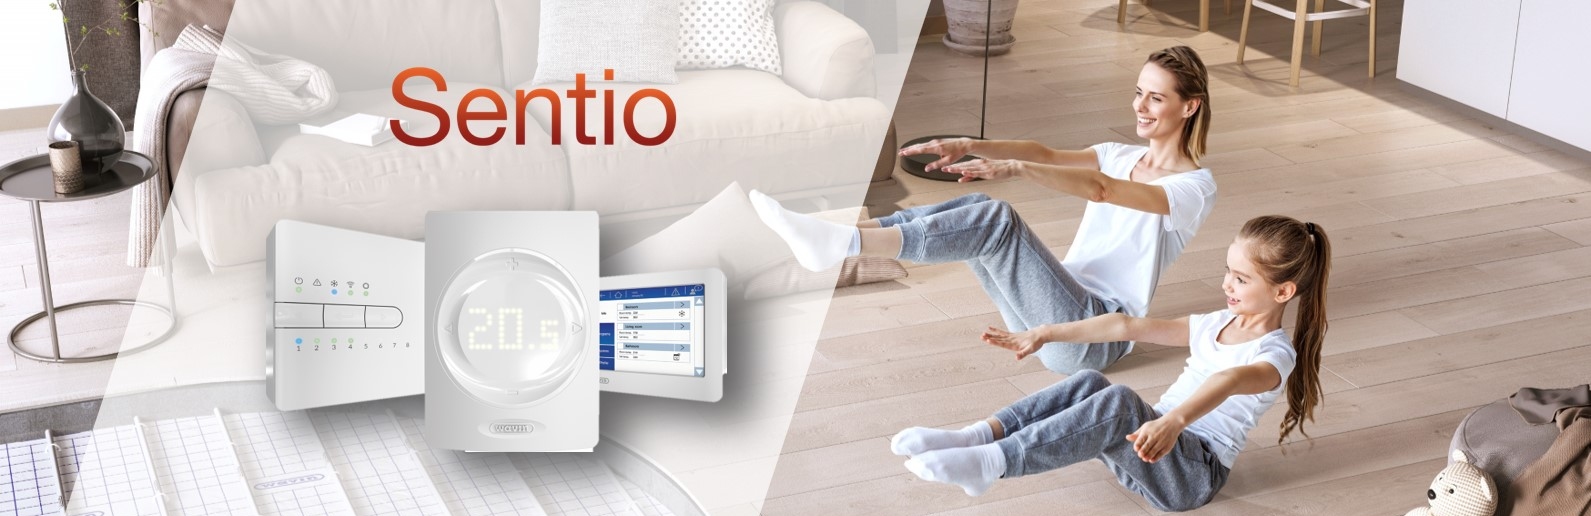 Sentio – nowa automatyka sterująca ogrzewaniem podłogowym od Wavin